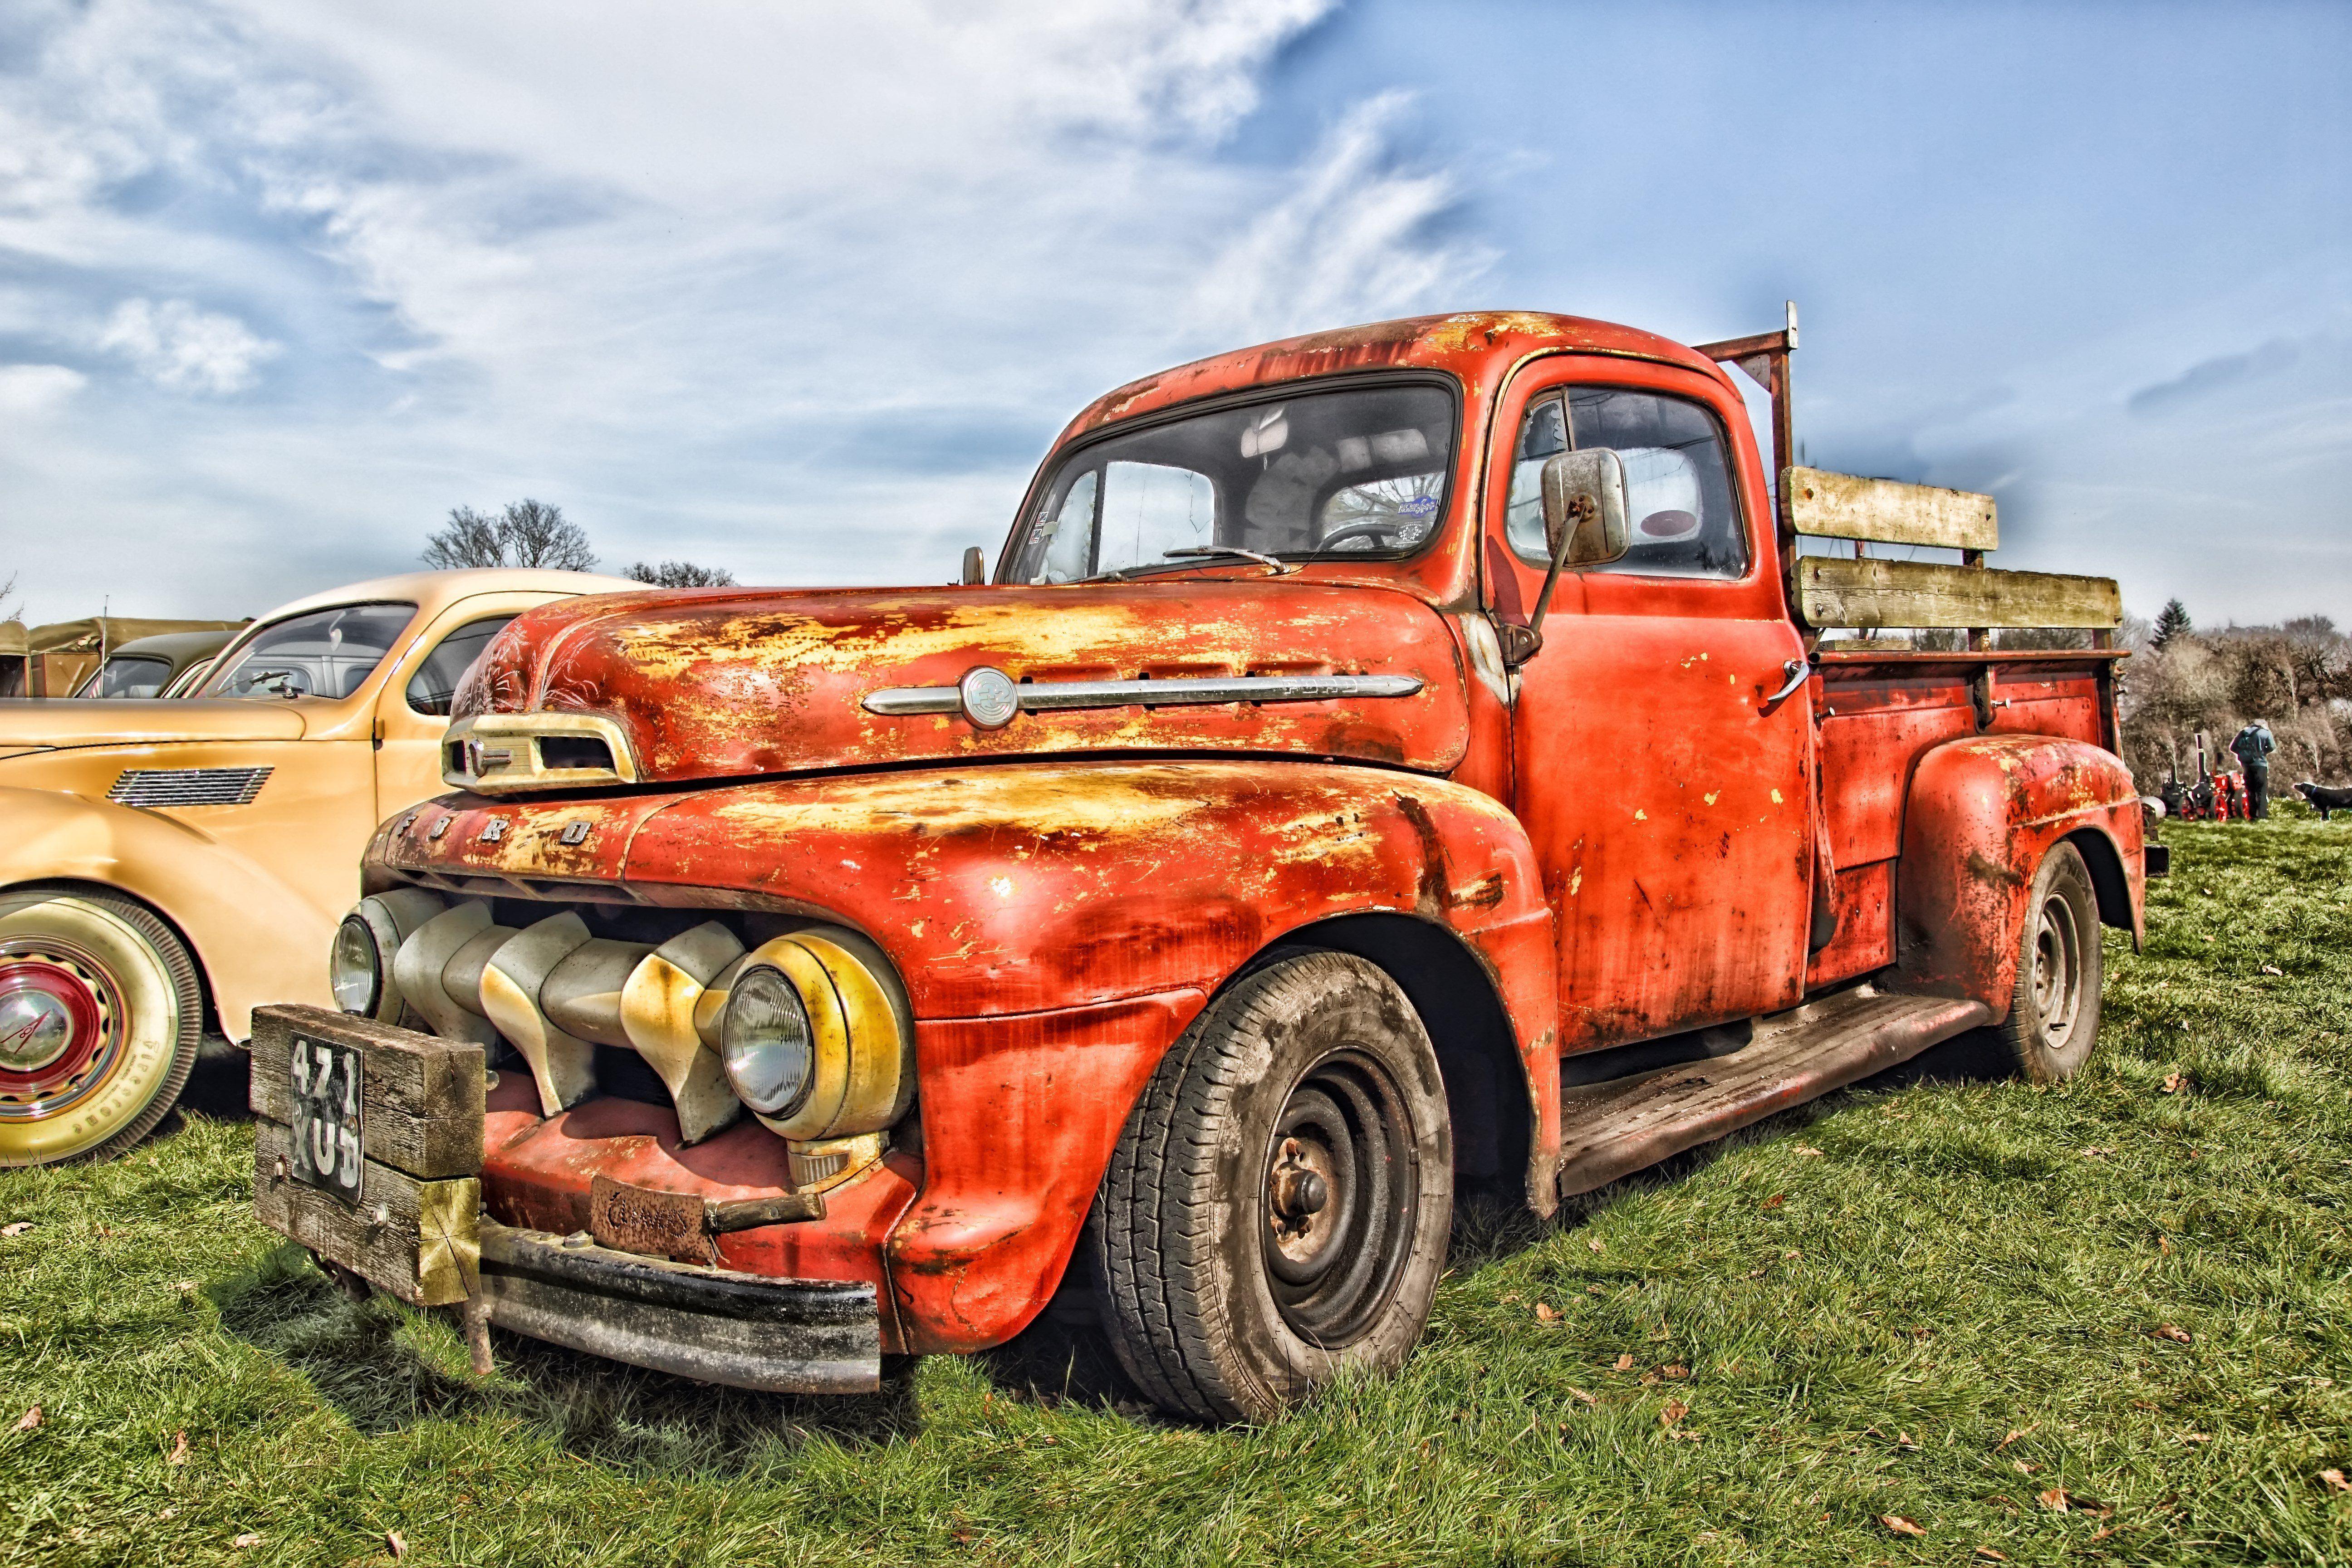 Rusty Old Truck wallpaperx3456. Old trucks, Classic ford trucks, Classic truck